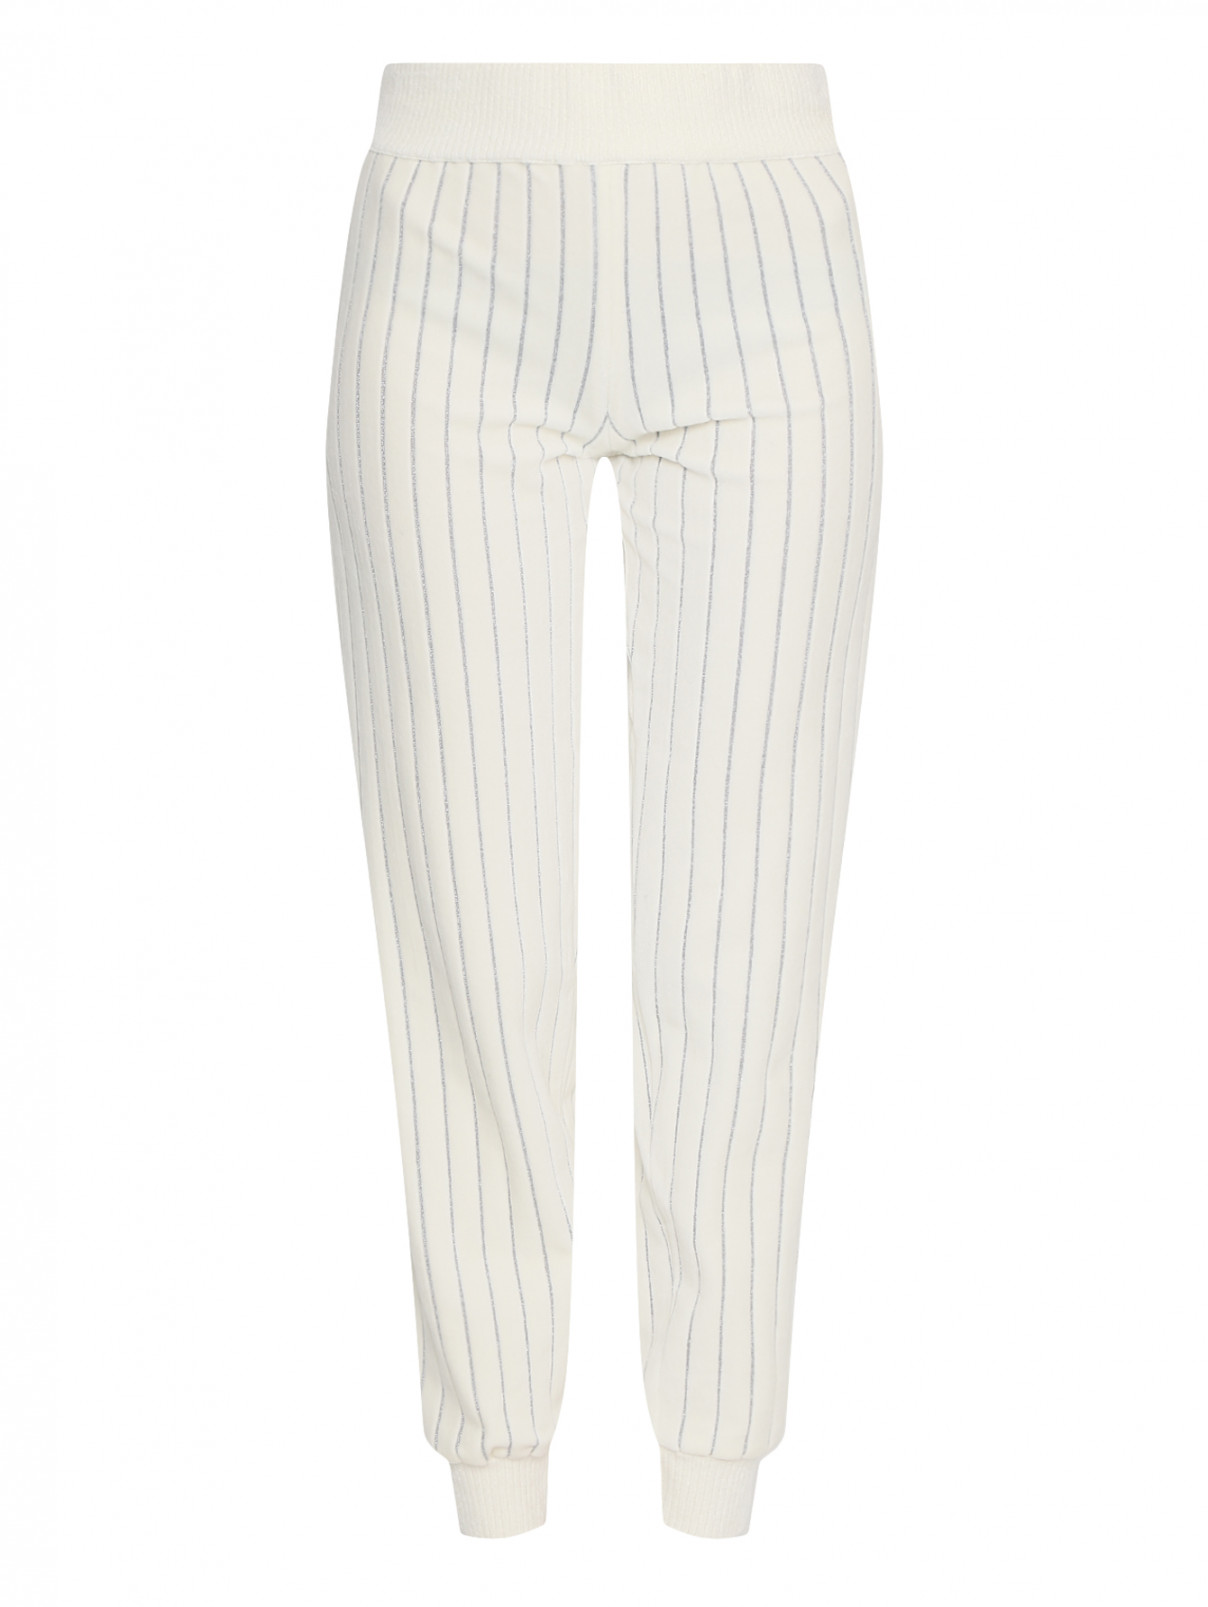 Трикотажные брюки из хлопка с узором "полоска" Sonia Rykiel  –  Общий вид  – Цвет:  Белый